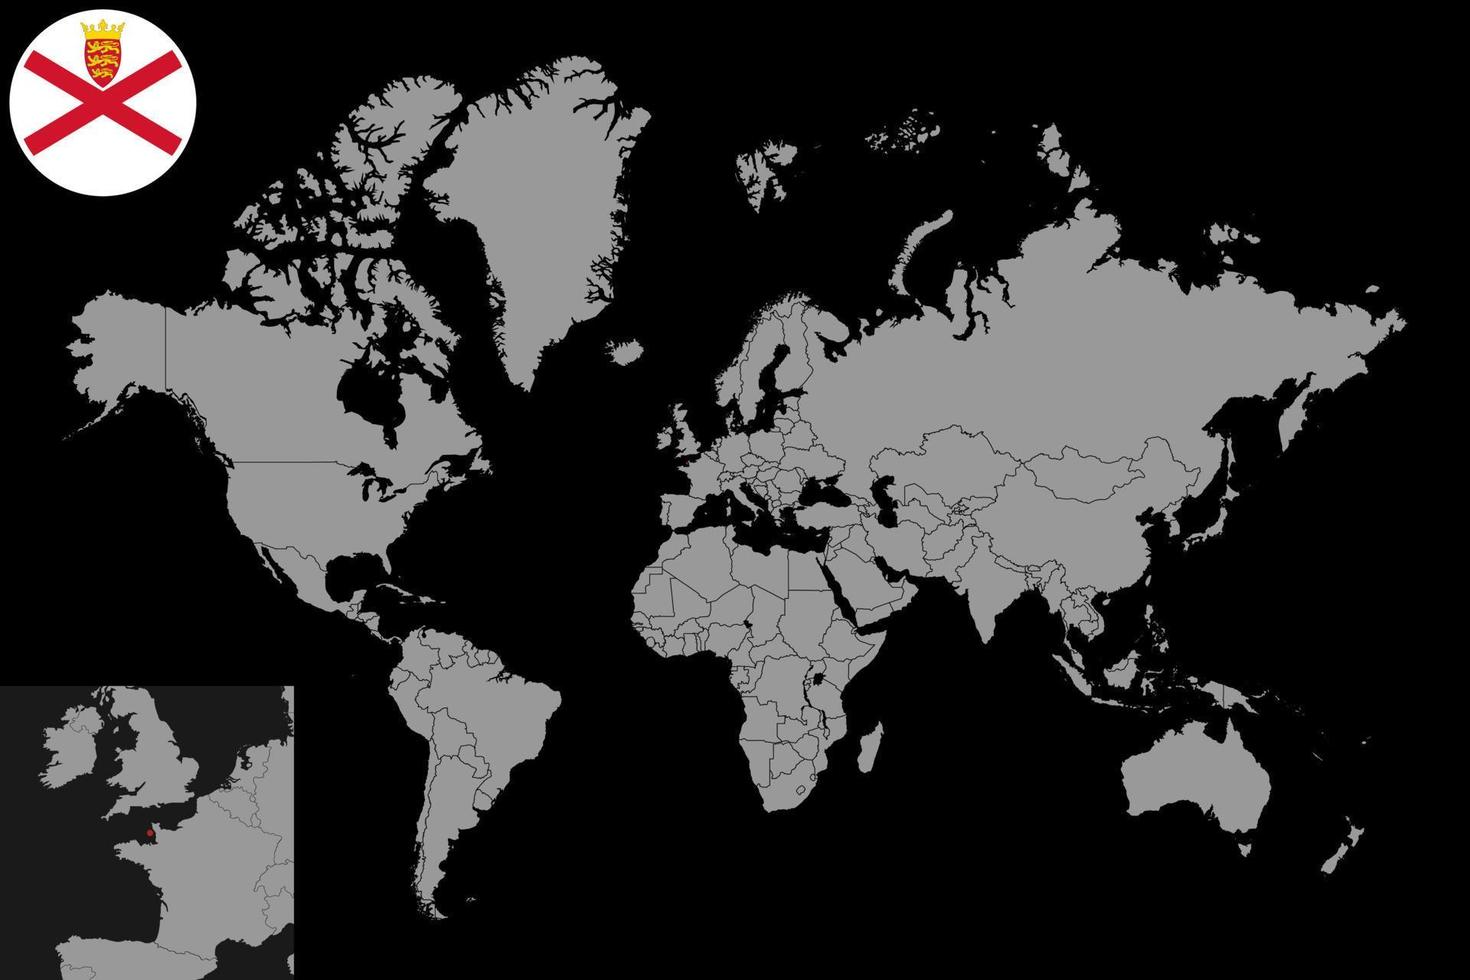 speldkaart met jersey vlag op wereldkaart. vectorillustratie. vector